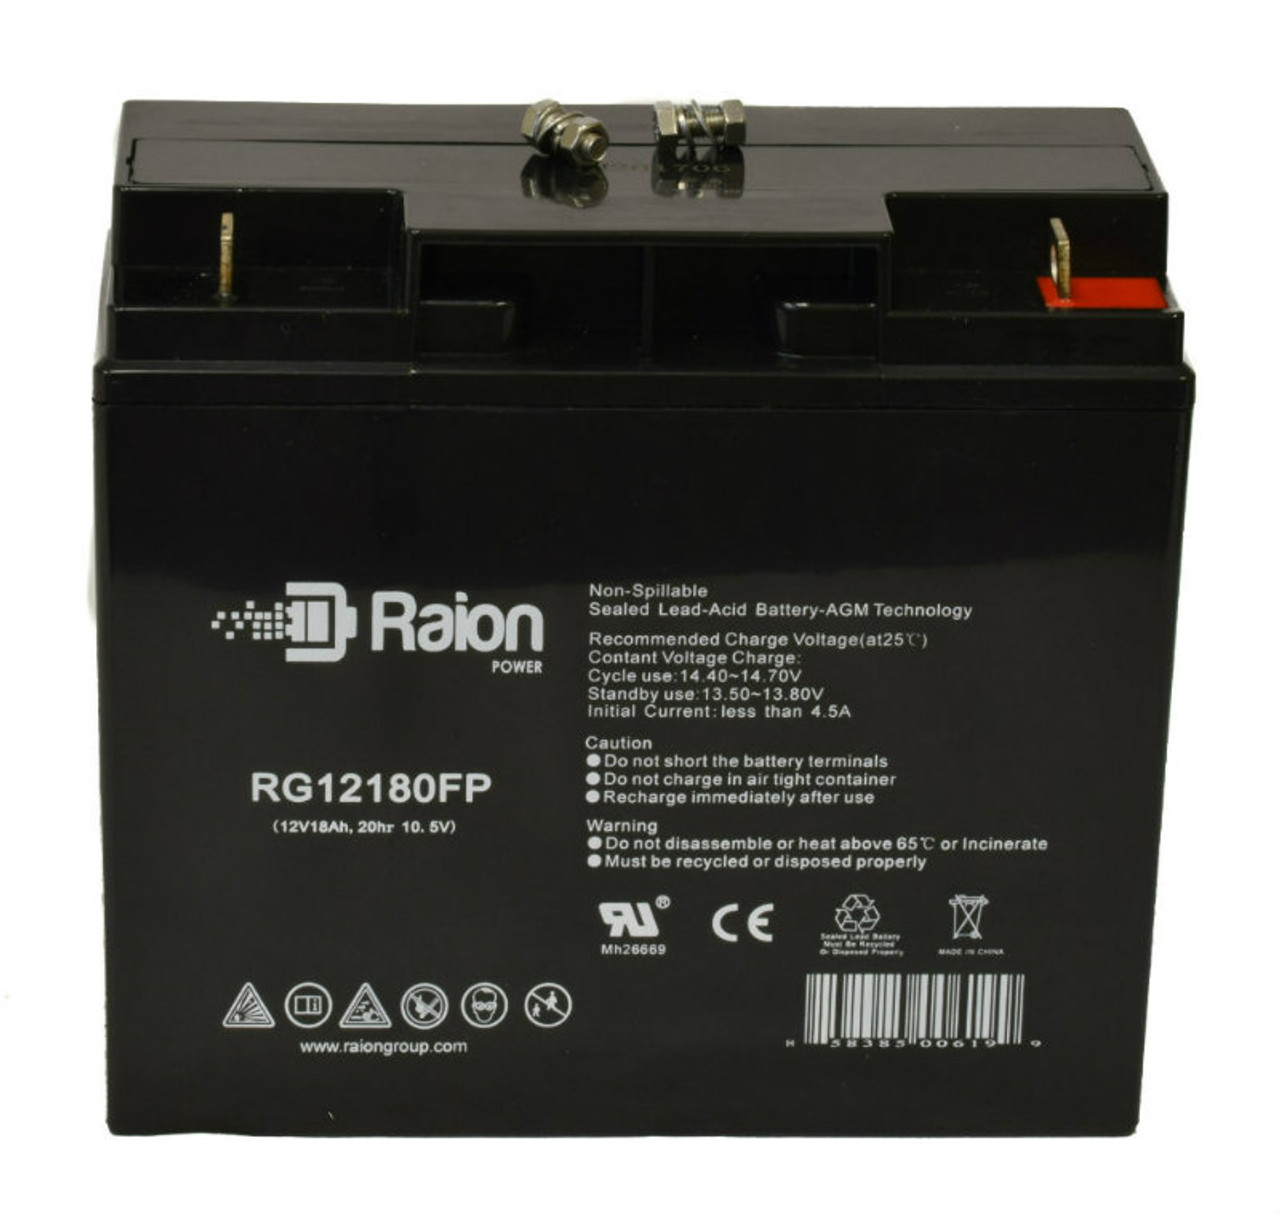 Raion Power RG12180FP 12V 18Ah Lead Acid Battery for Haijiu HG-17-12